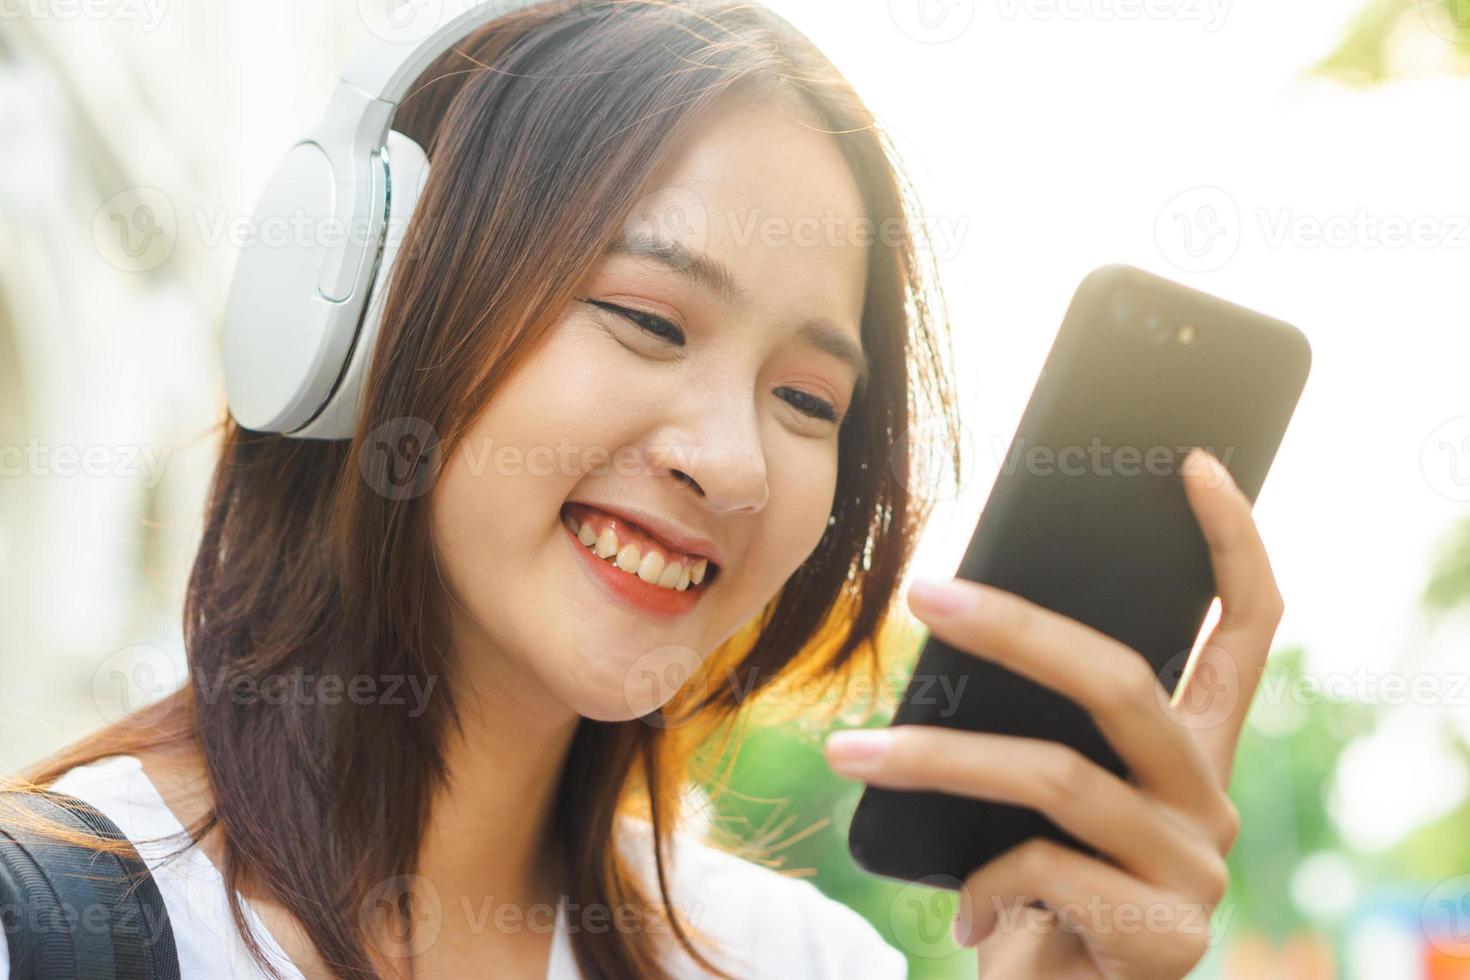 jeune fille asiatique lisant du texte sur son téléphone et portant des écouteurs pour écouter de la musique dans la rue photo